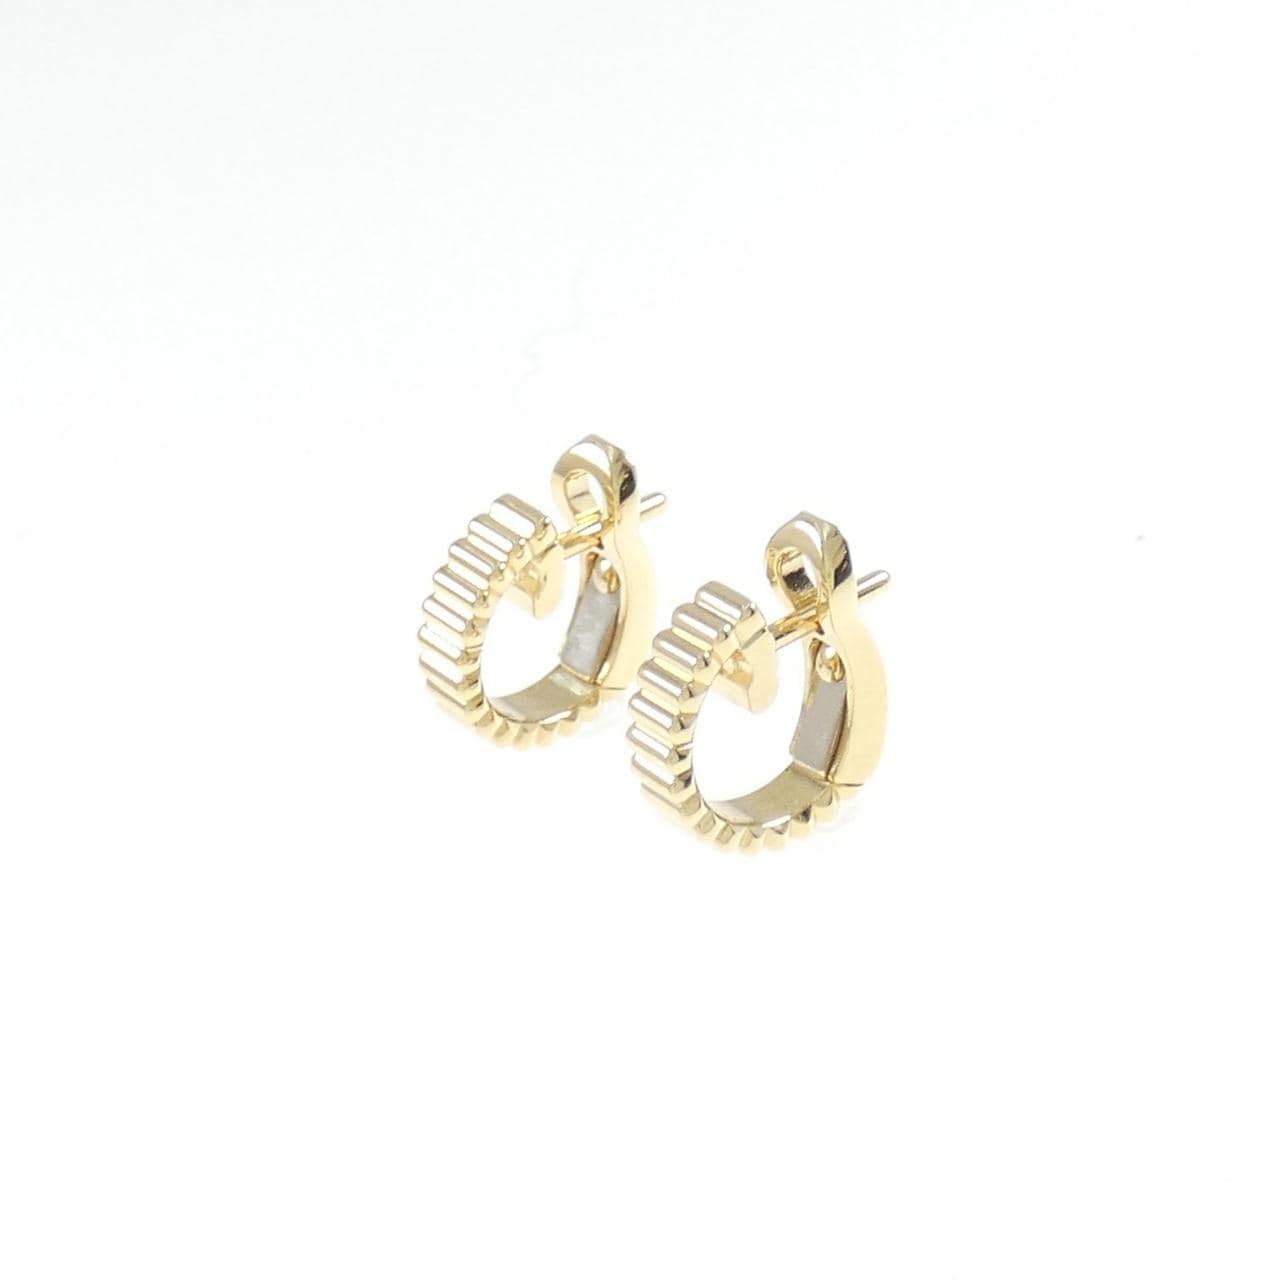 Boucheron grosgrain earrings